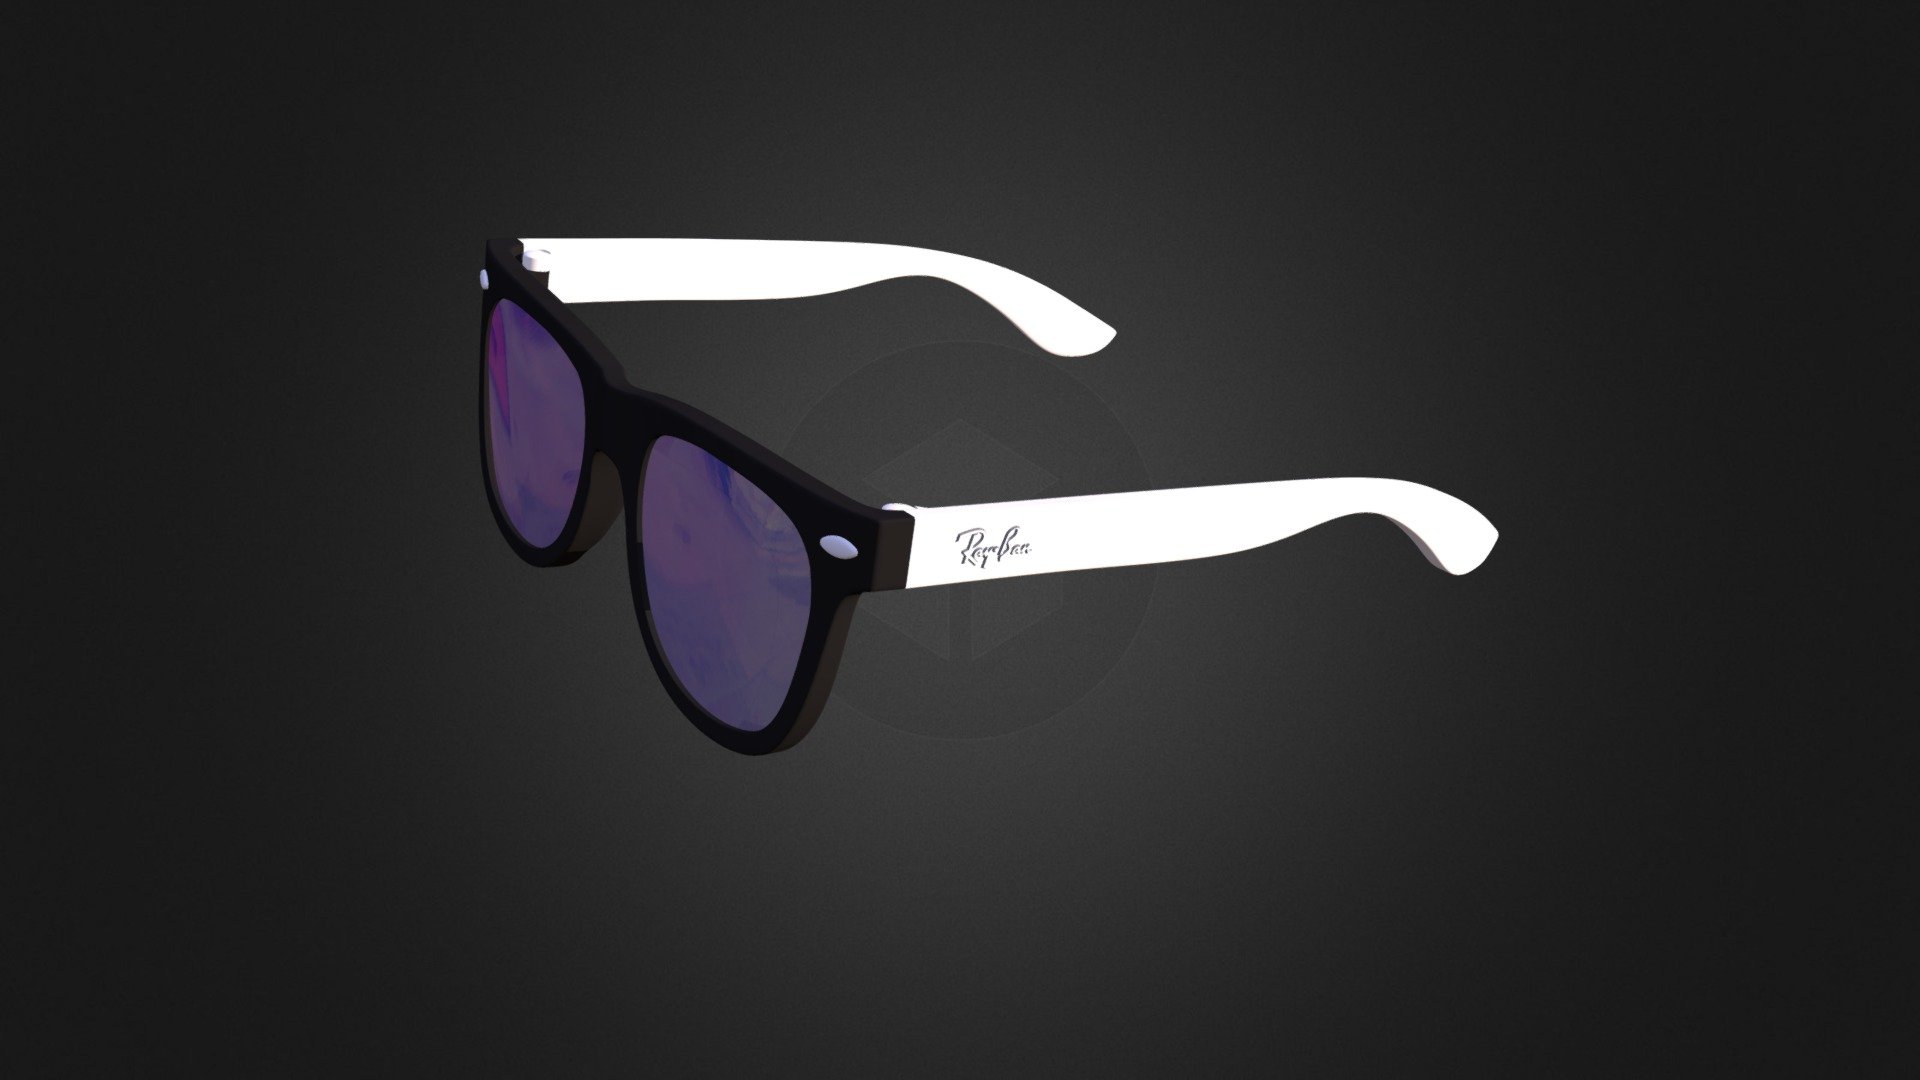 Modeling and visualization of Wayfarer sunglasses by Ray Ban - Wayfarer by Ray Ban - 3D model by Nejumy 3d model